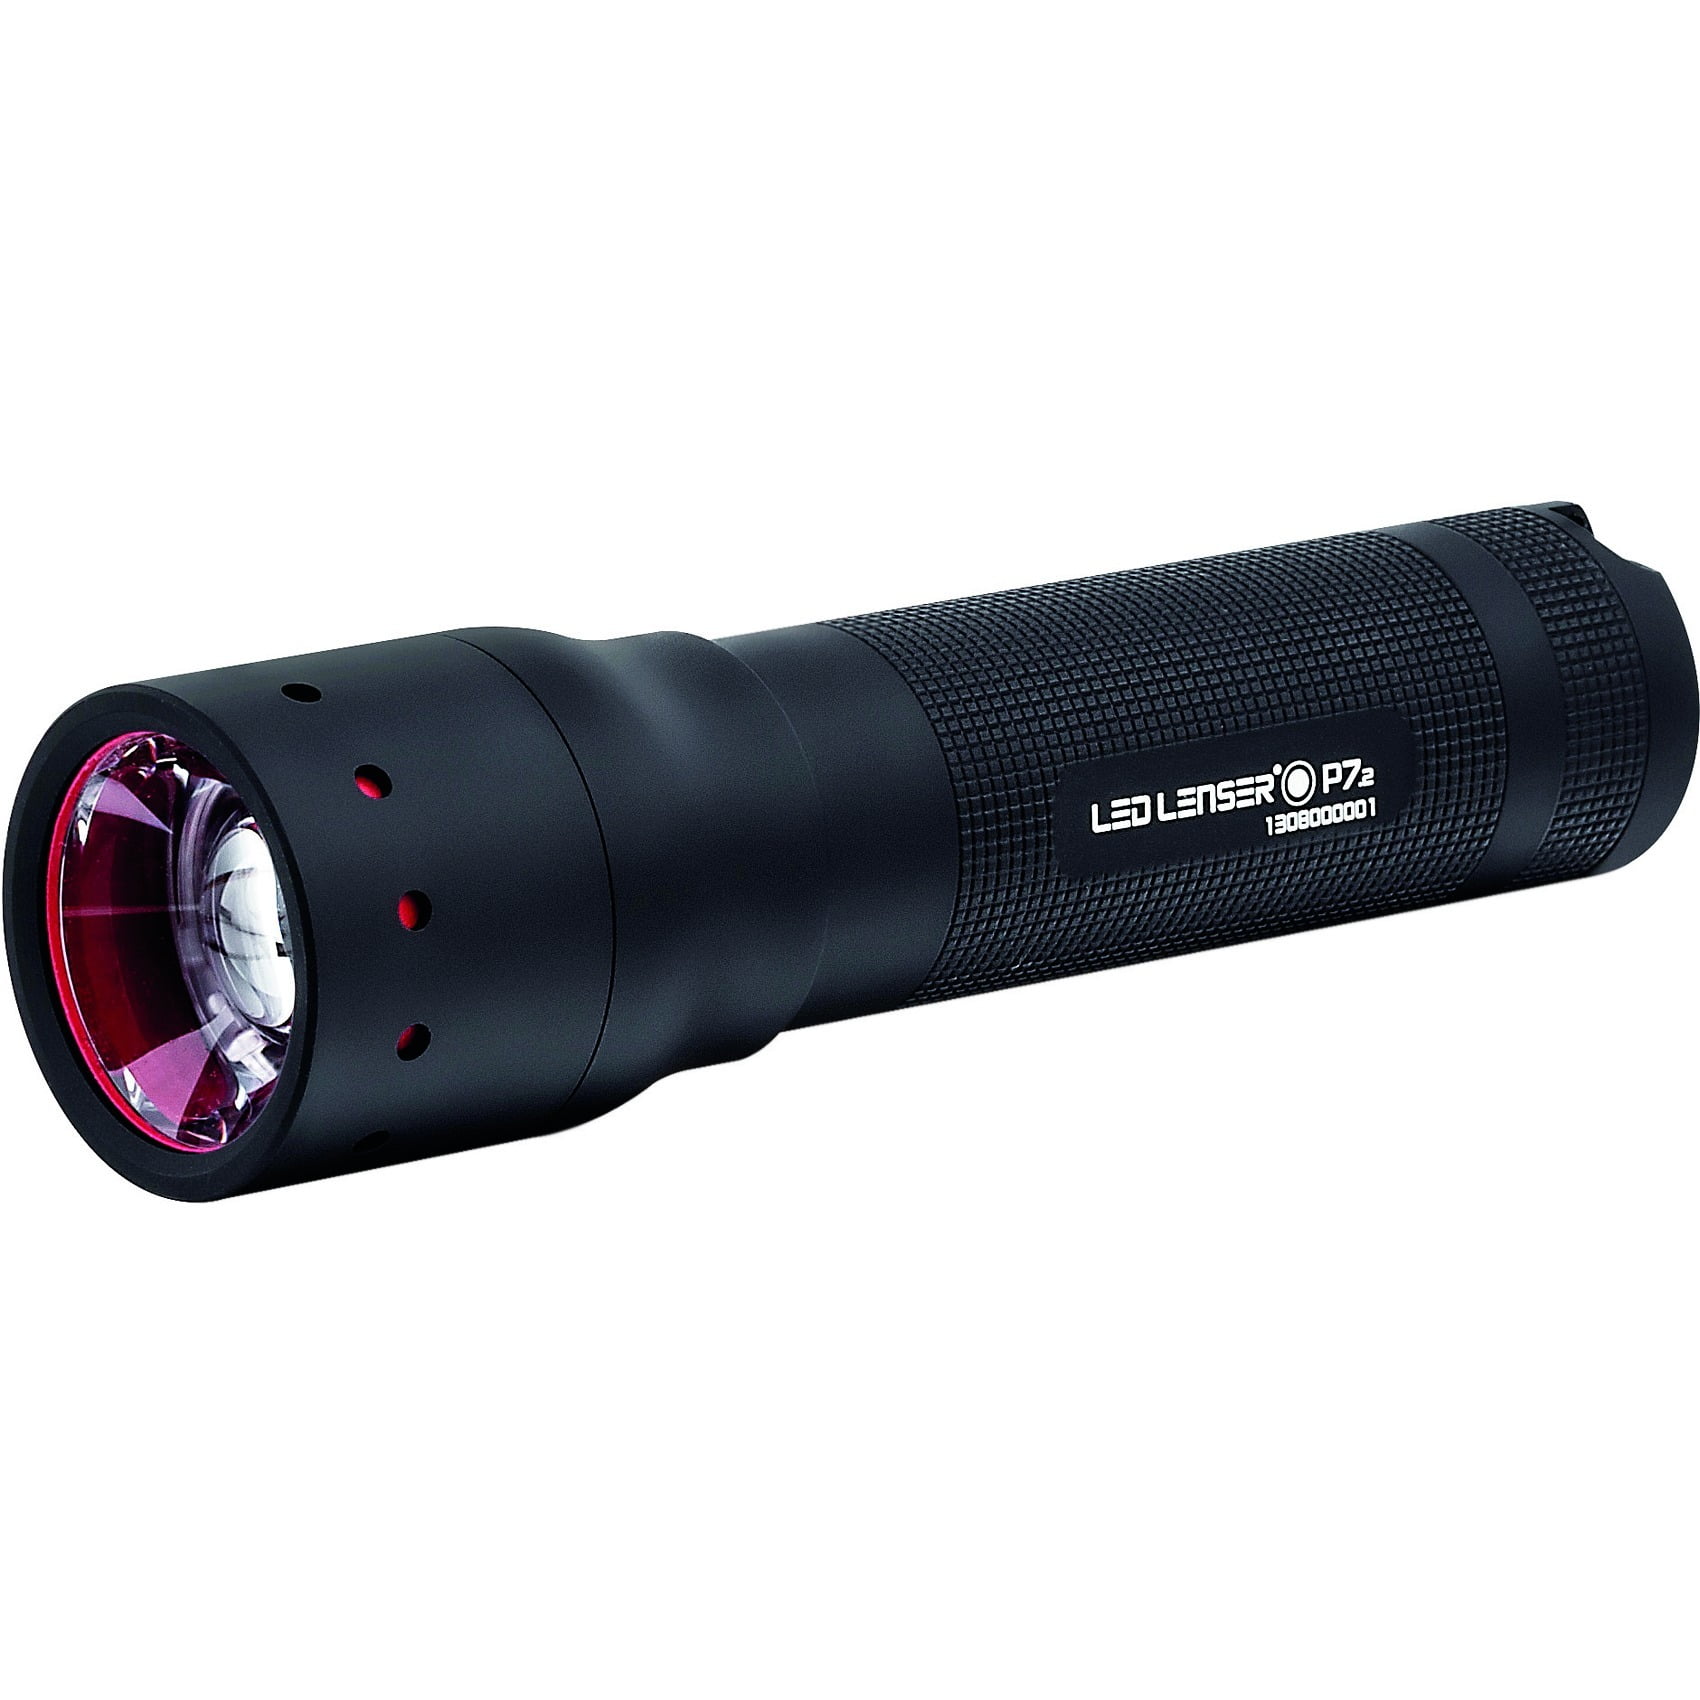 Produktiv Eller At øge LED Lenser P7-2 Flashlight - Walmart.com